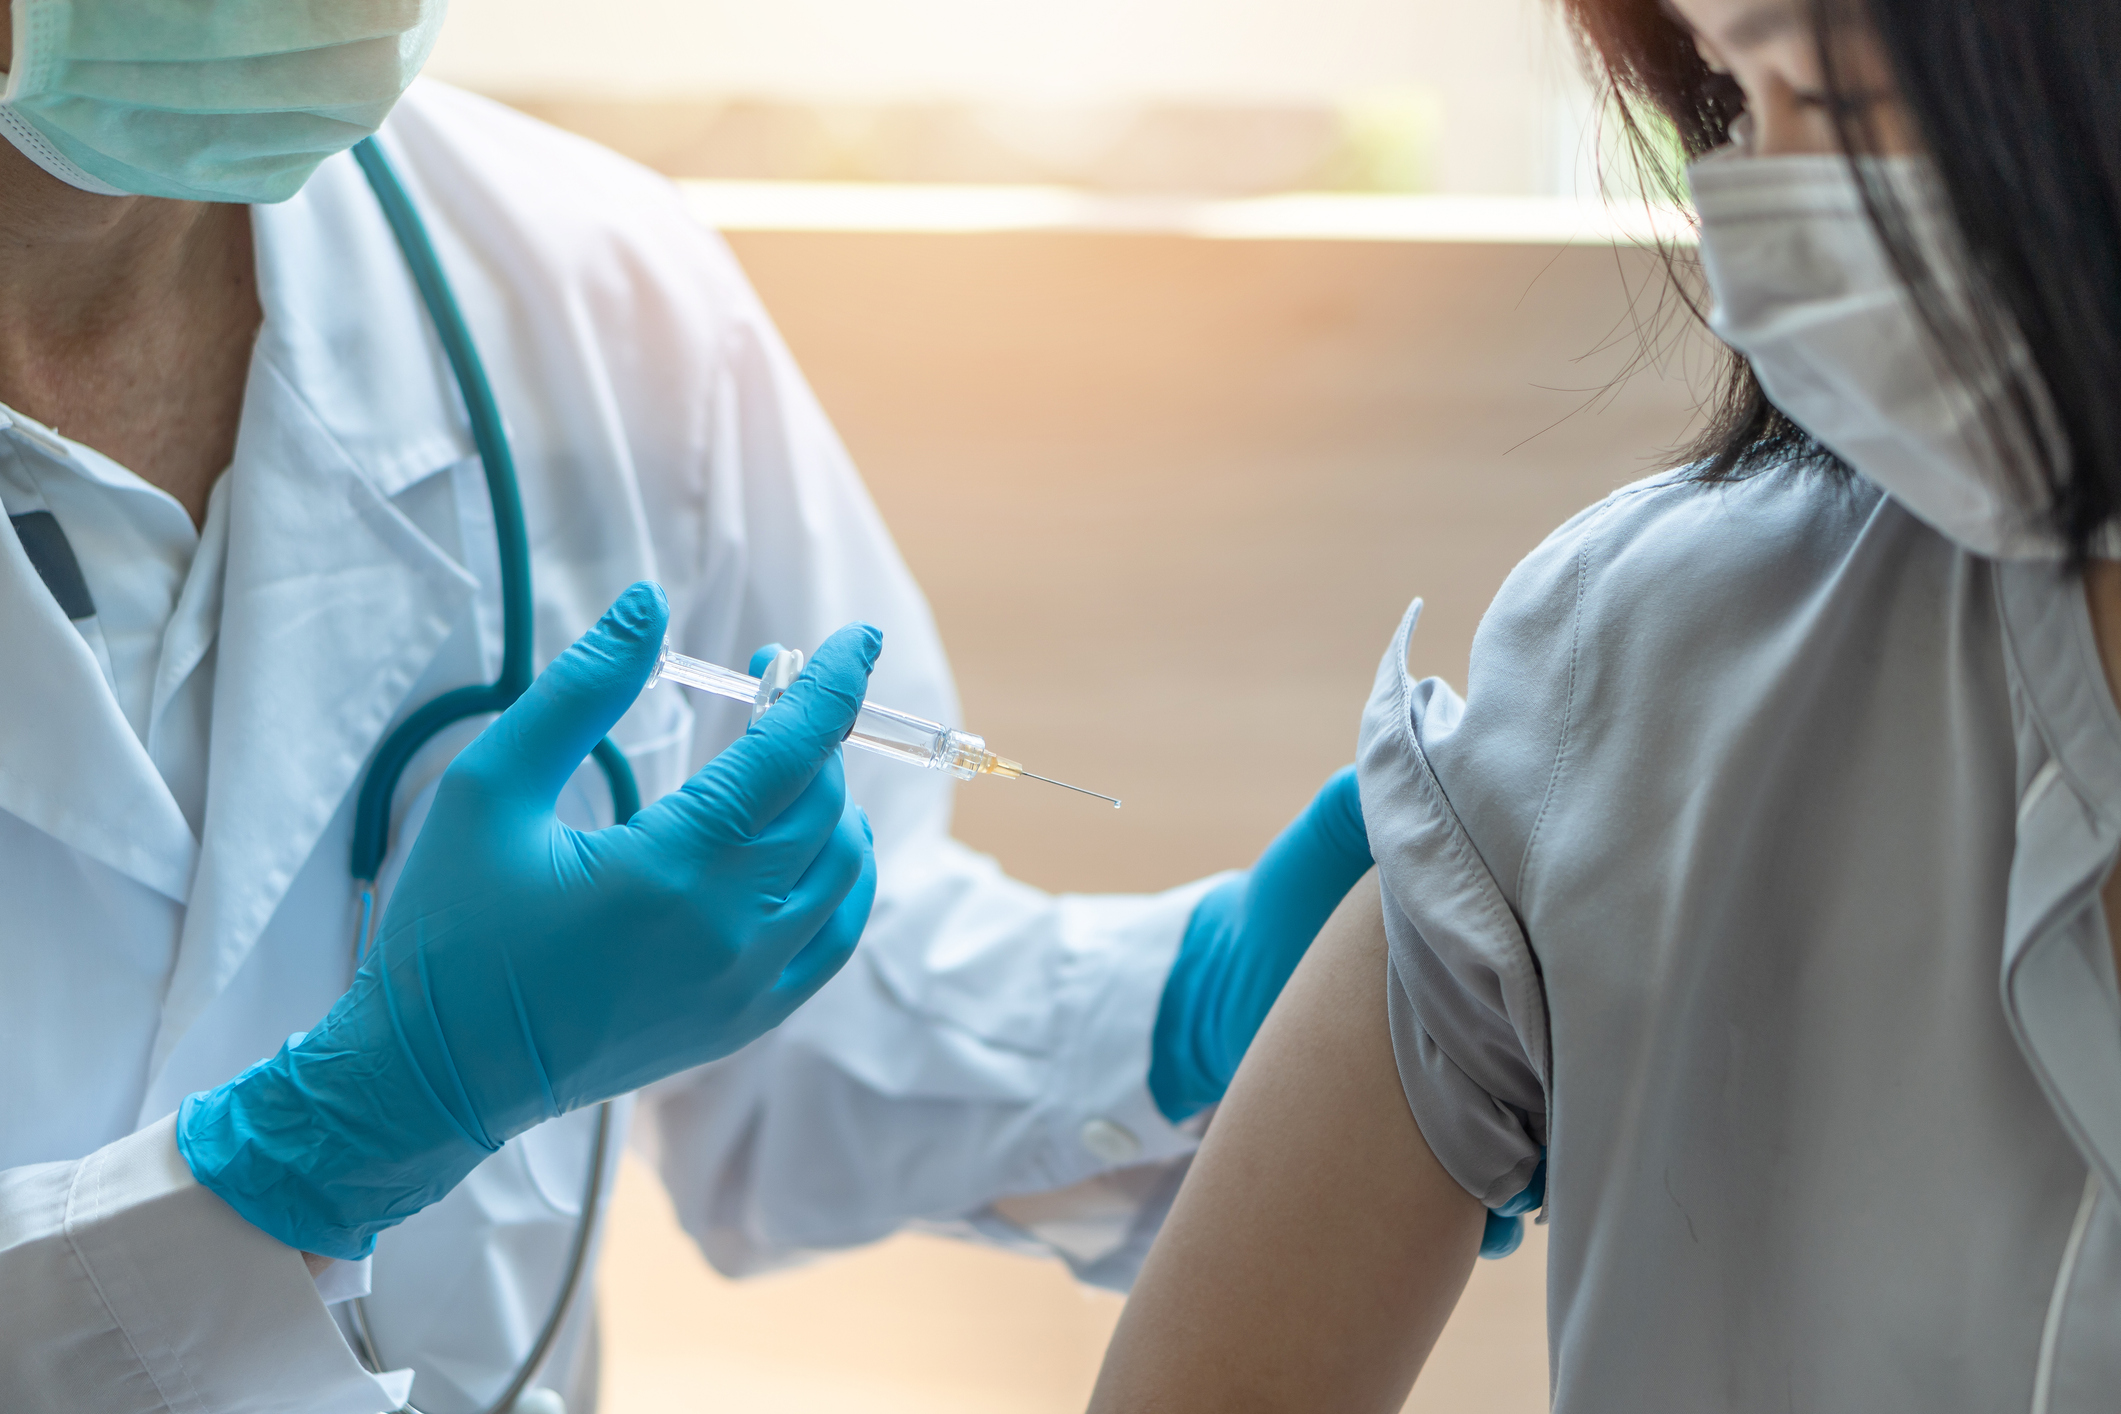 La no vacunación COVID en alérgicos no es una opción, según la SEAIC